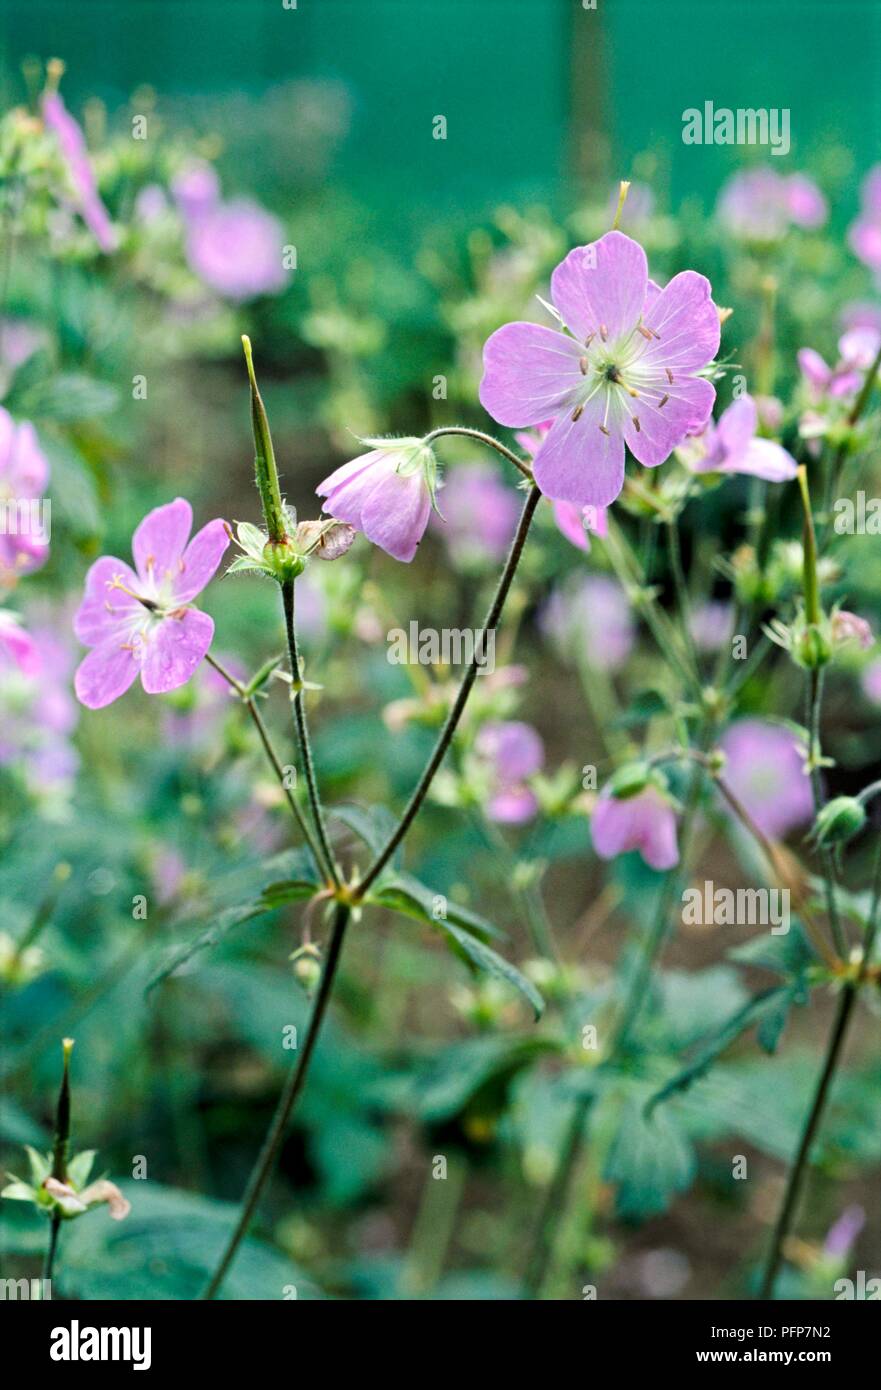 Geranium maculatum 'espresso' (legno geranio, Wild geranio), close-up sui fiori viola Foto Stock